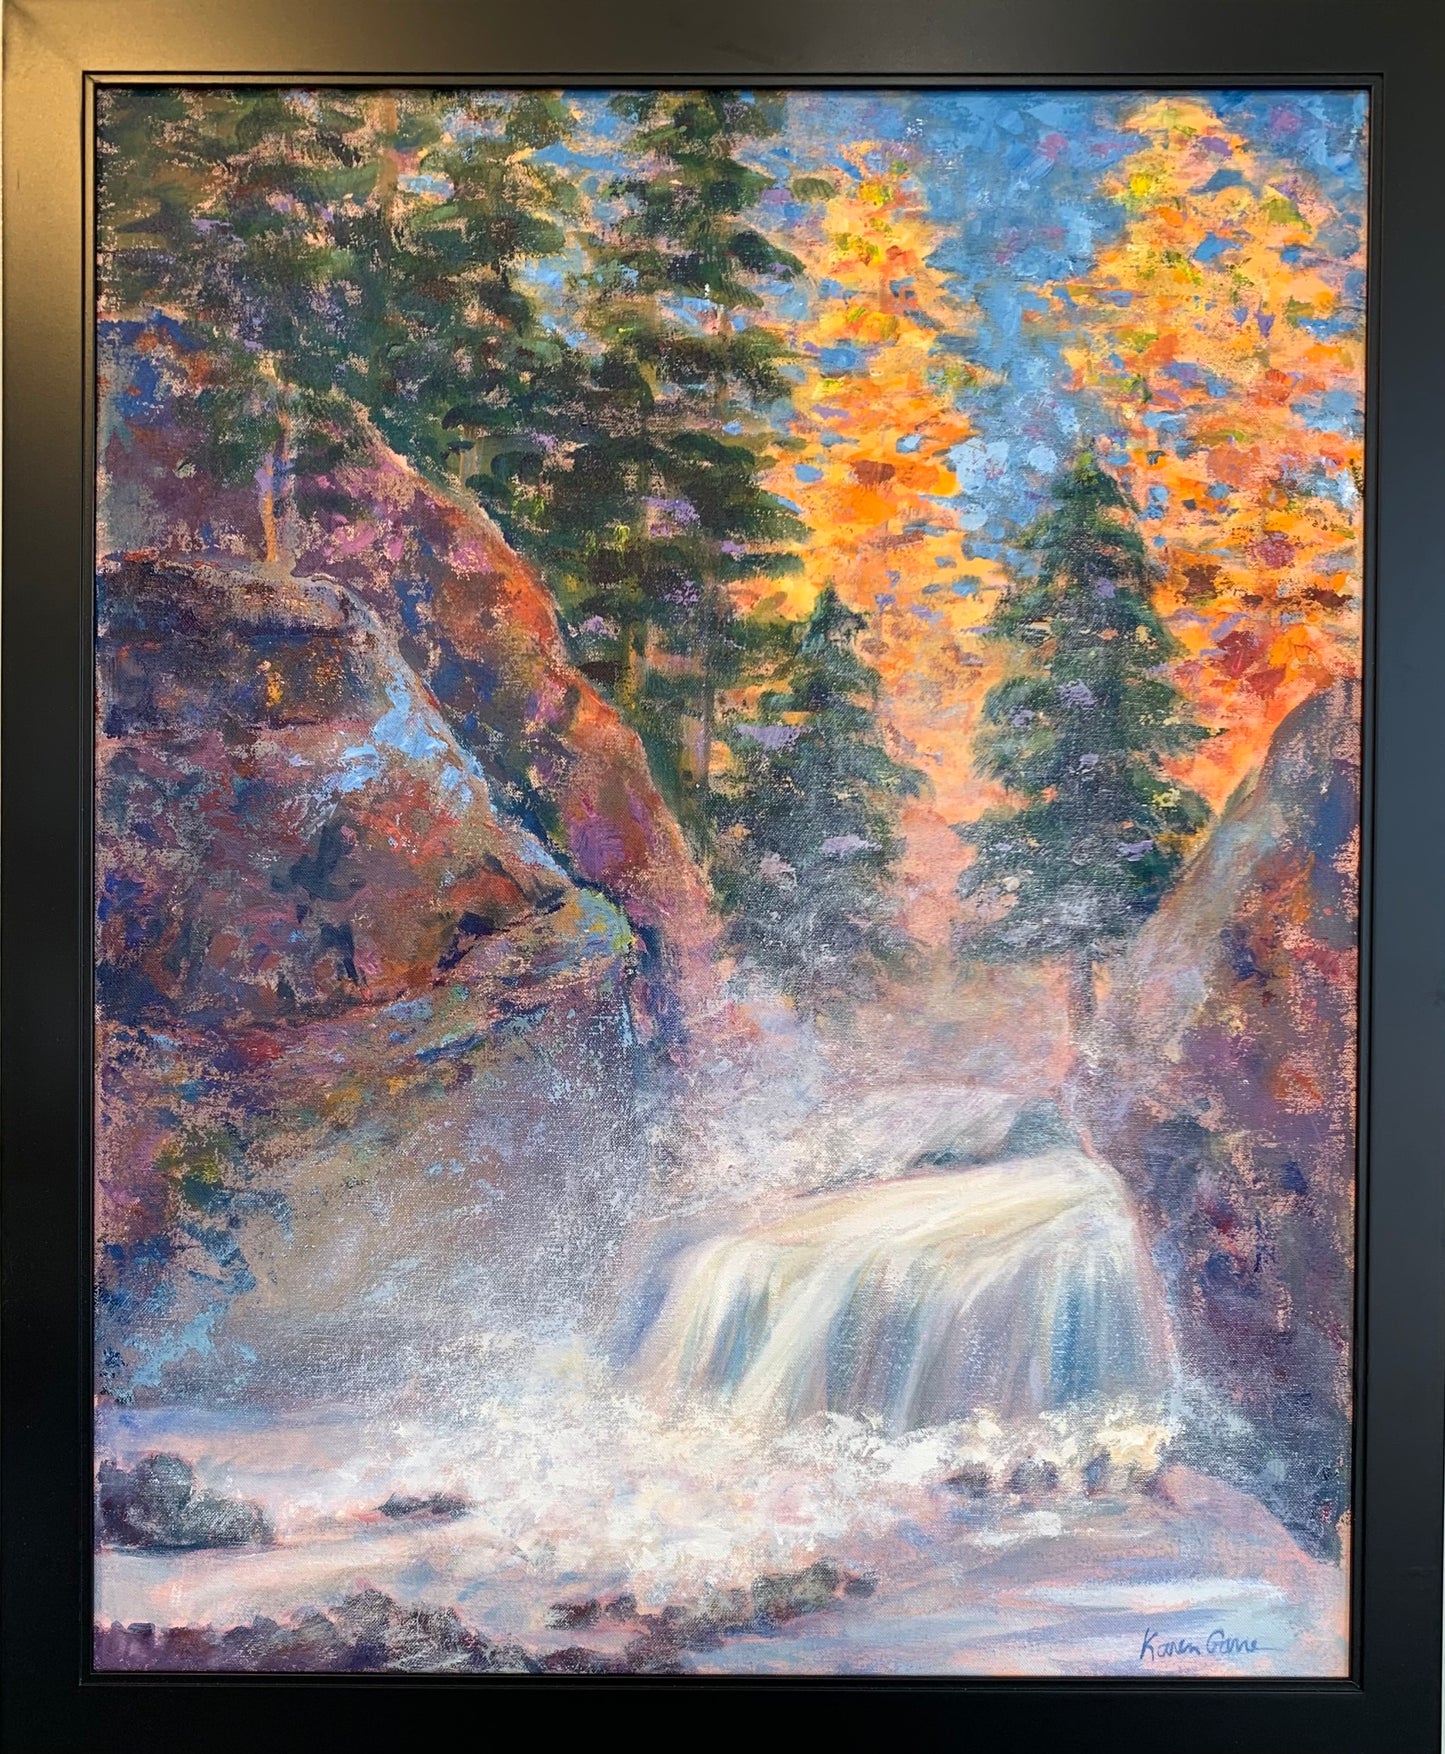 KarenG- Painting- "Firehole Falls" 24x30